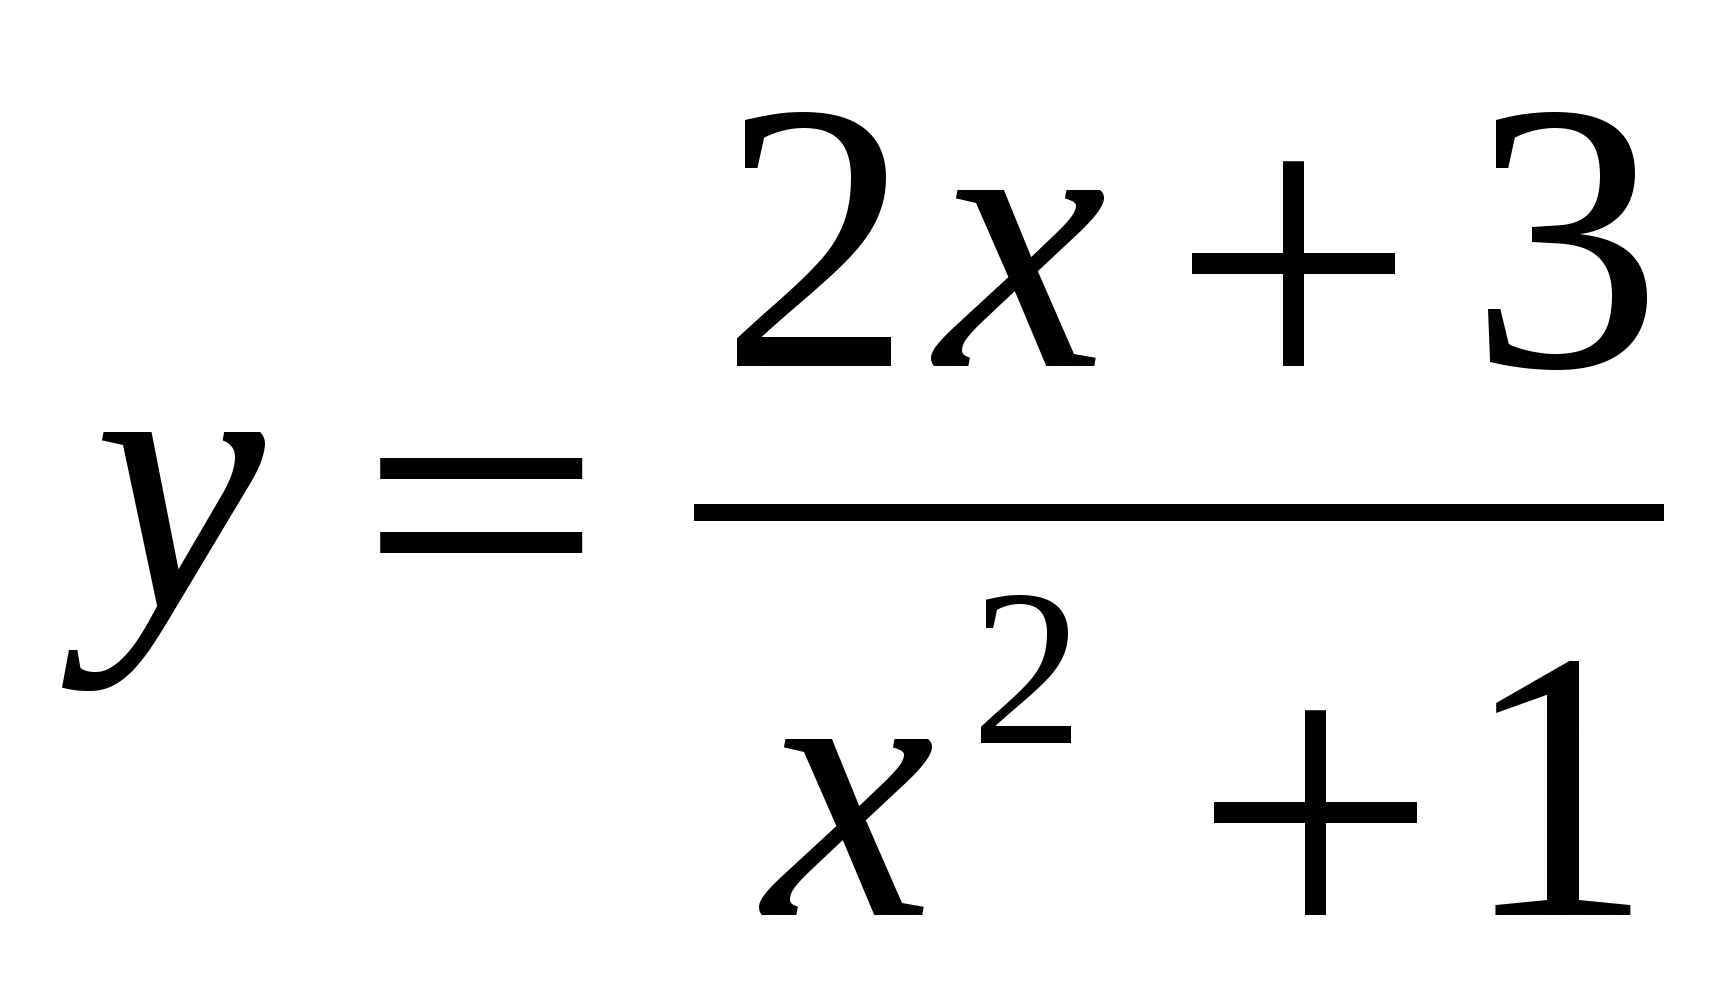 Конспект урока по алгебре «Четные и нечетные функции».9 класс